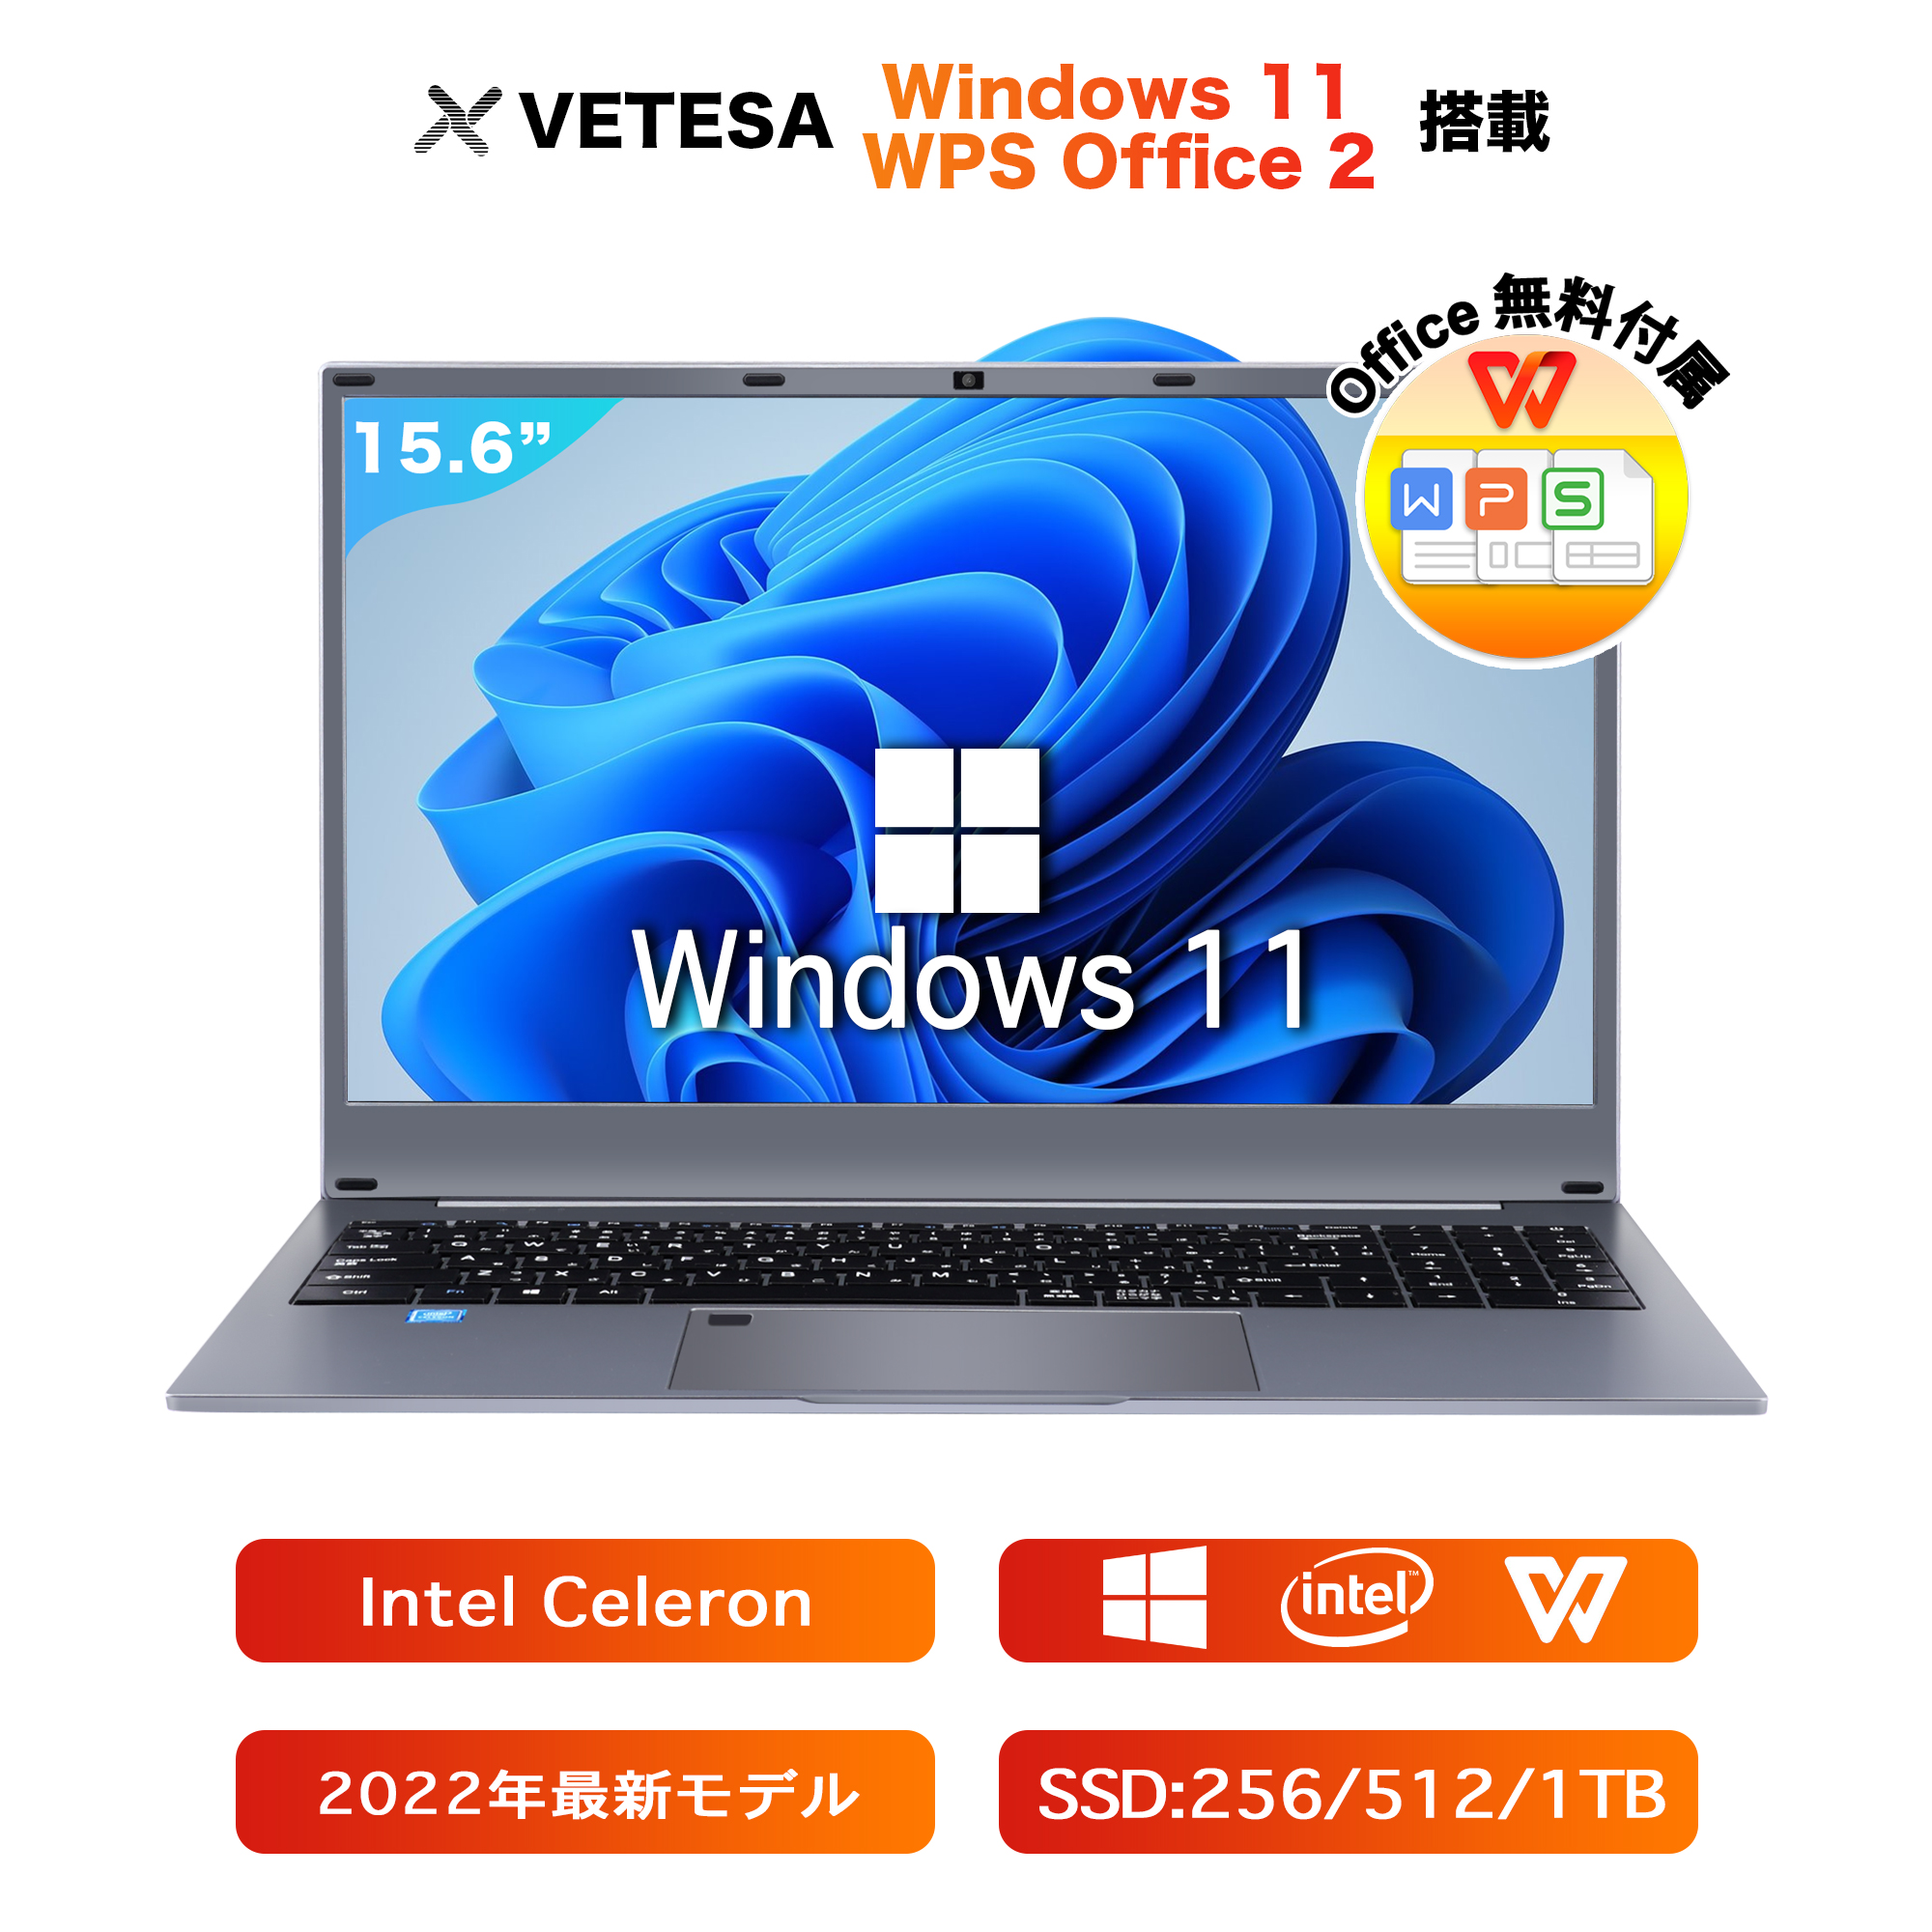 Win11搭載 ノートパソコン Office付き 新品 初心者向け 初期設定済 パソコン Windows11 Pro ノートPC 15.6 型 高性能メモリ16GB SSD 256GB 〜 1TB インテルCeleron 5095A 10キー付 Webカメラ zoom 指紋認証 大容量バッテリー 日本語キーボードフィルム テレワーク 学生向け